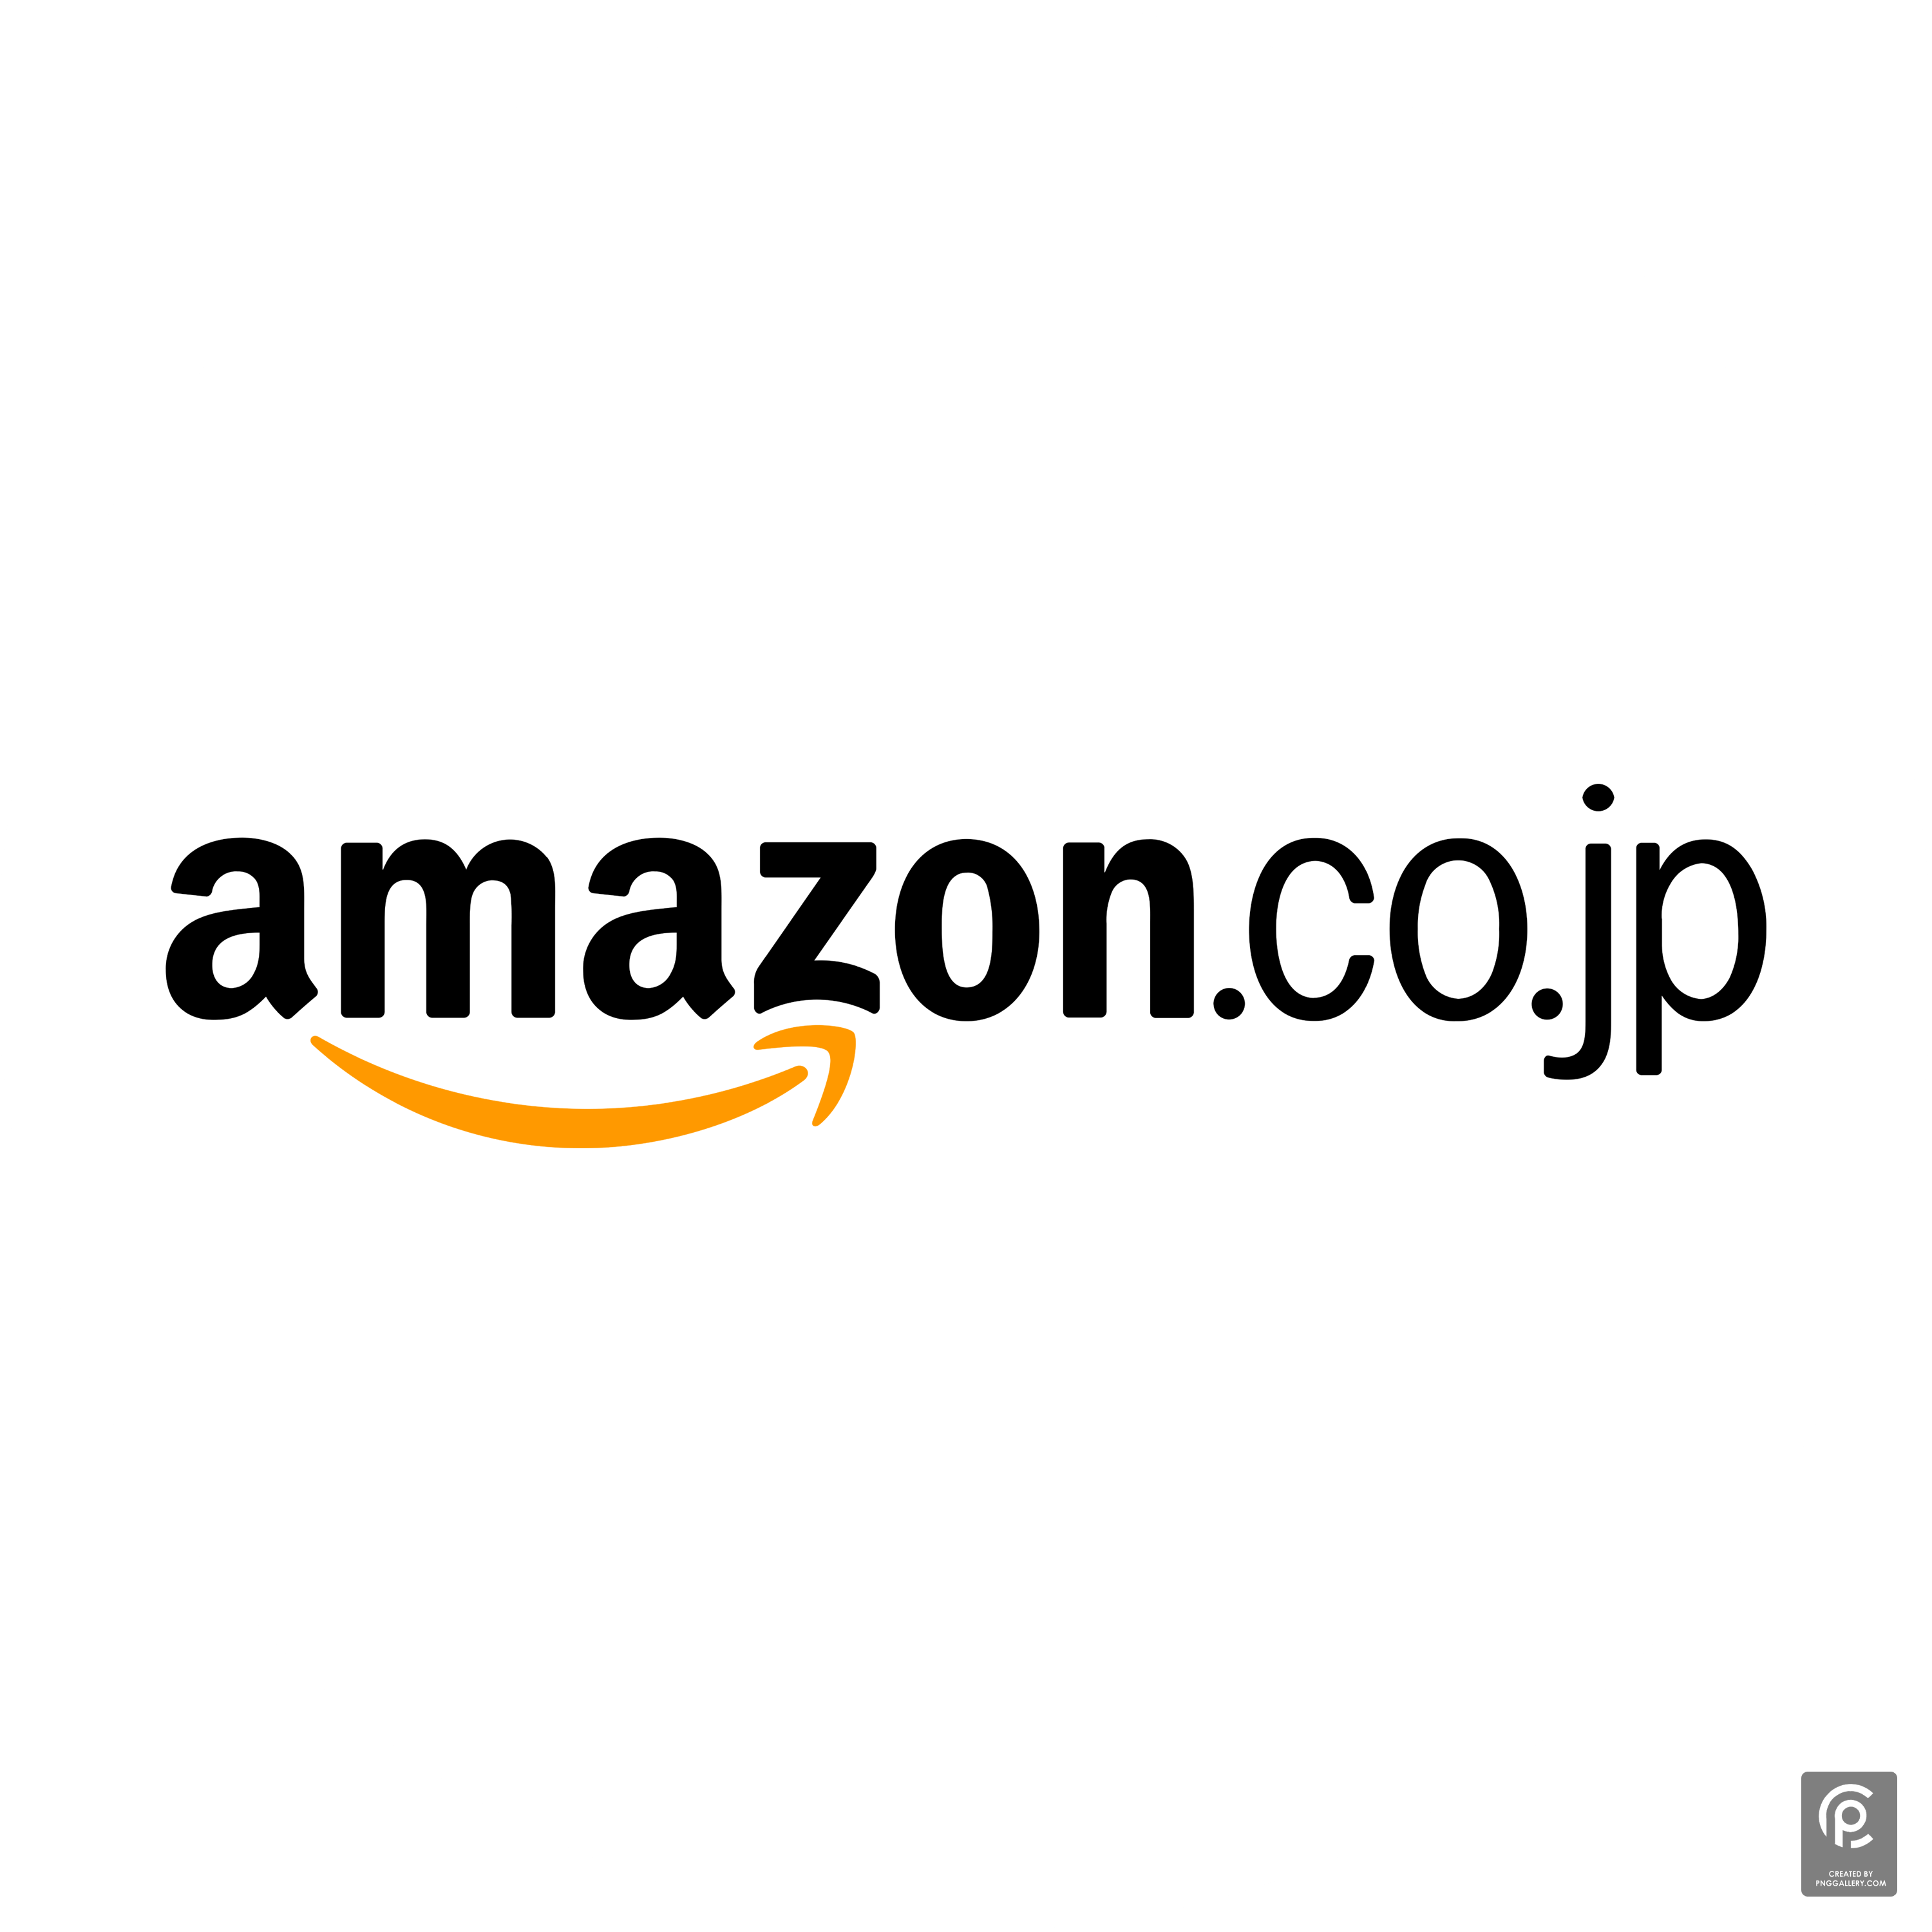 Amazon.co.jp Logo Transparent Clipart